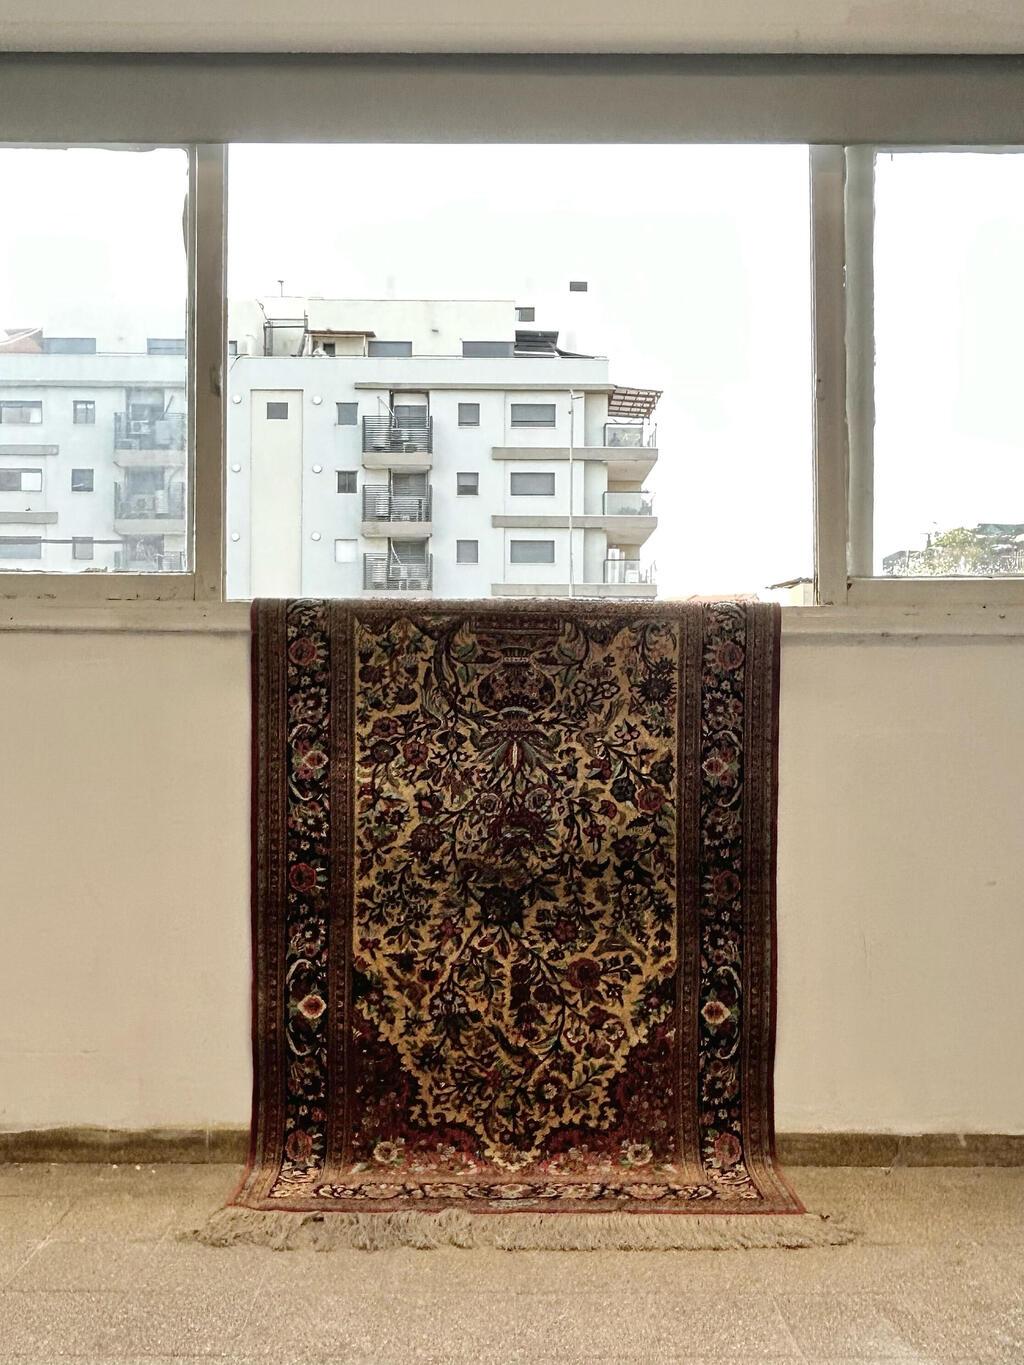 מיצב רדי-מייד. שטיח פרסי משנת 1980 מגולפייגן, איראן. עבודה של דוד מוטהדה 